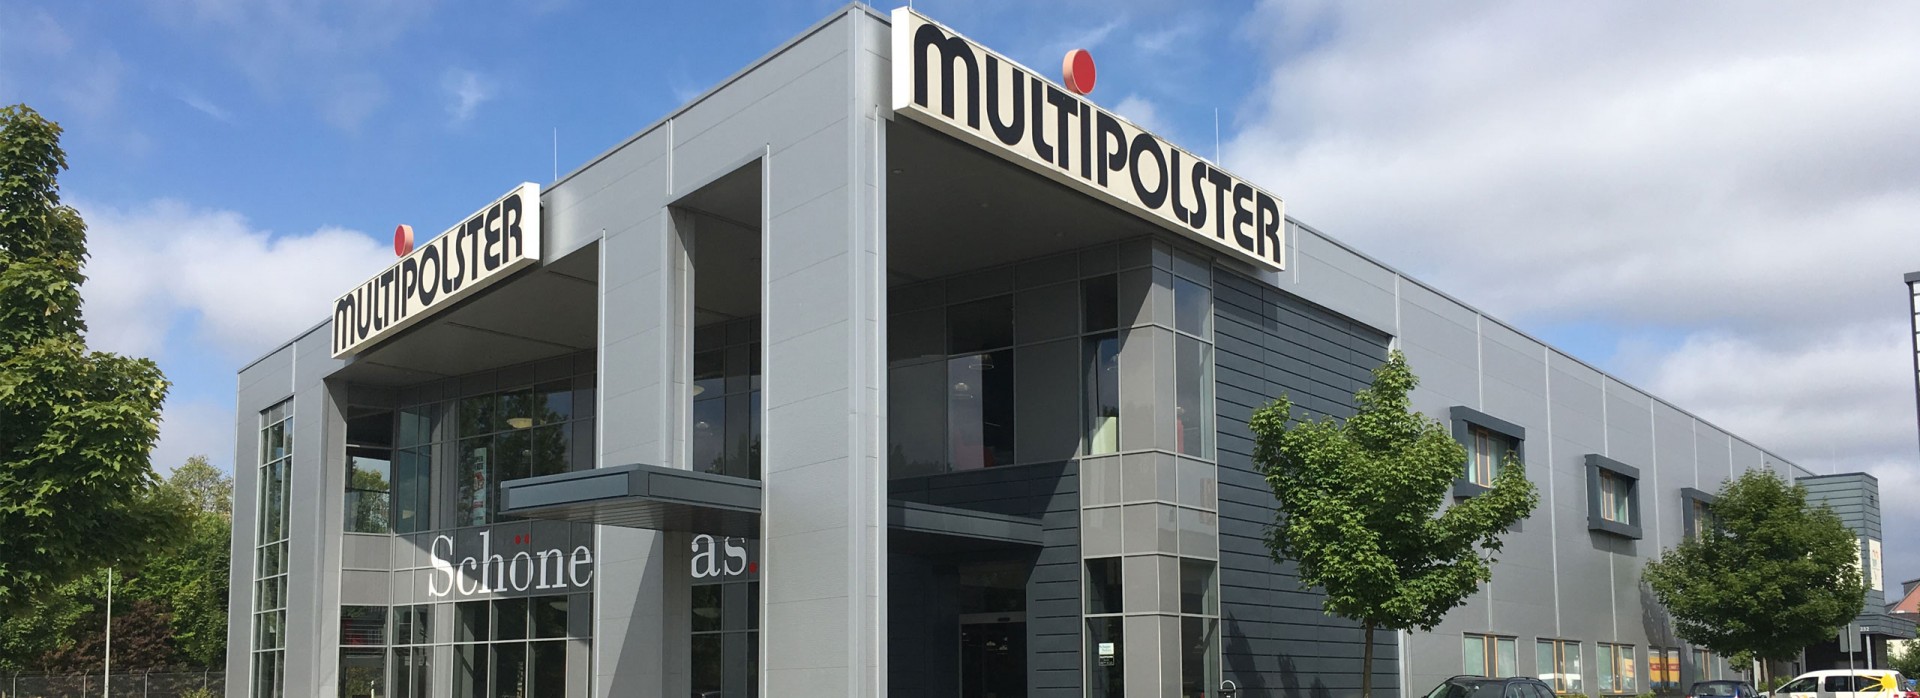 Multipolster -  Braunschweig, Frankfurter Straße 232 in Braunschweig